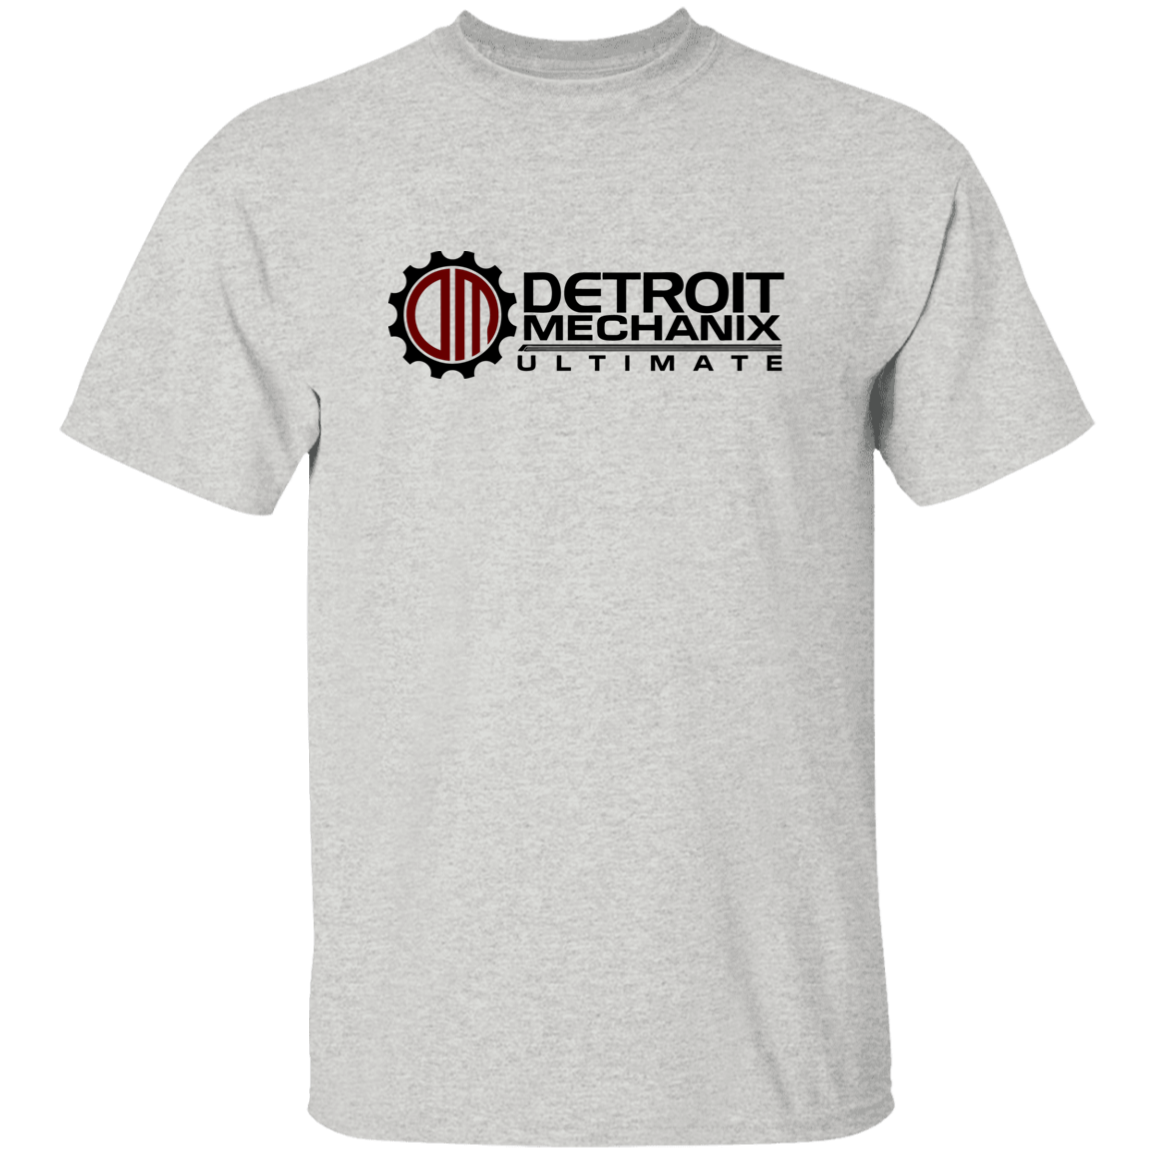 Detroit Mechanix Ultimate Youth 5.3 oz 100% Cotton T-Shirt